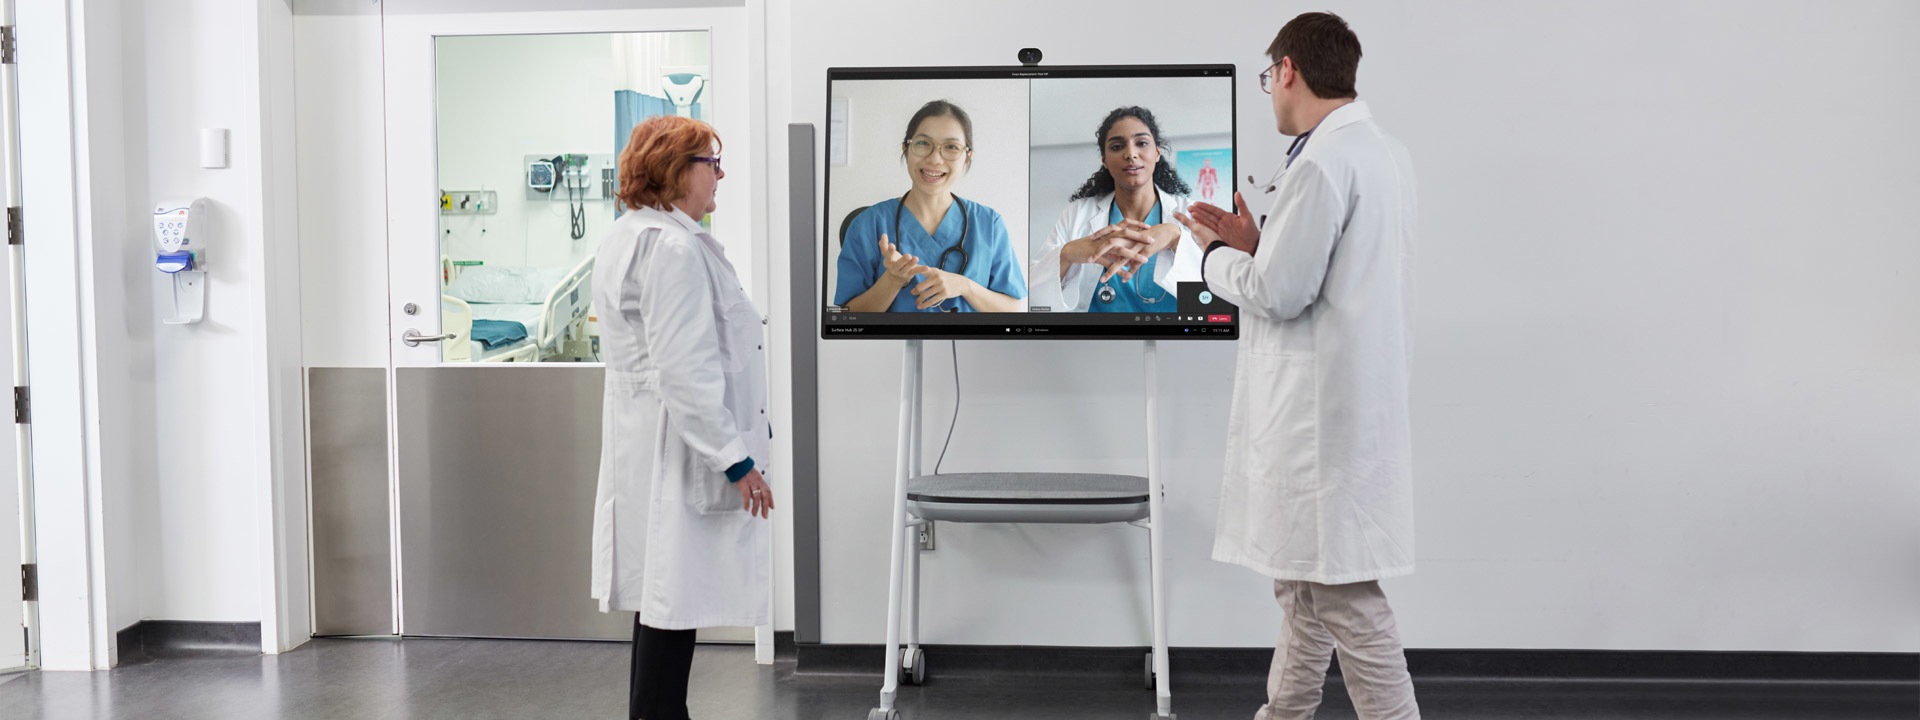 Két egészségügyi szakember kórházi környezetben vesz részt egy Teams-videohívásban